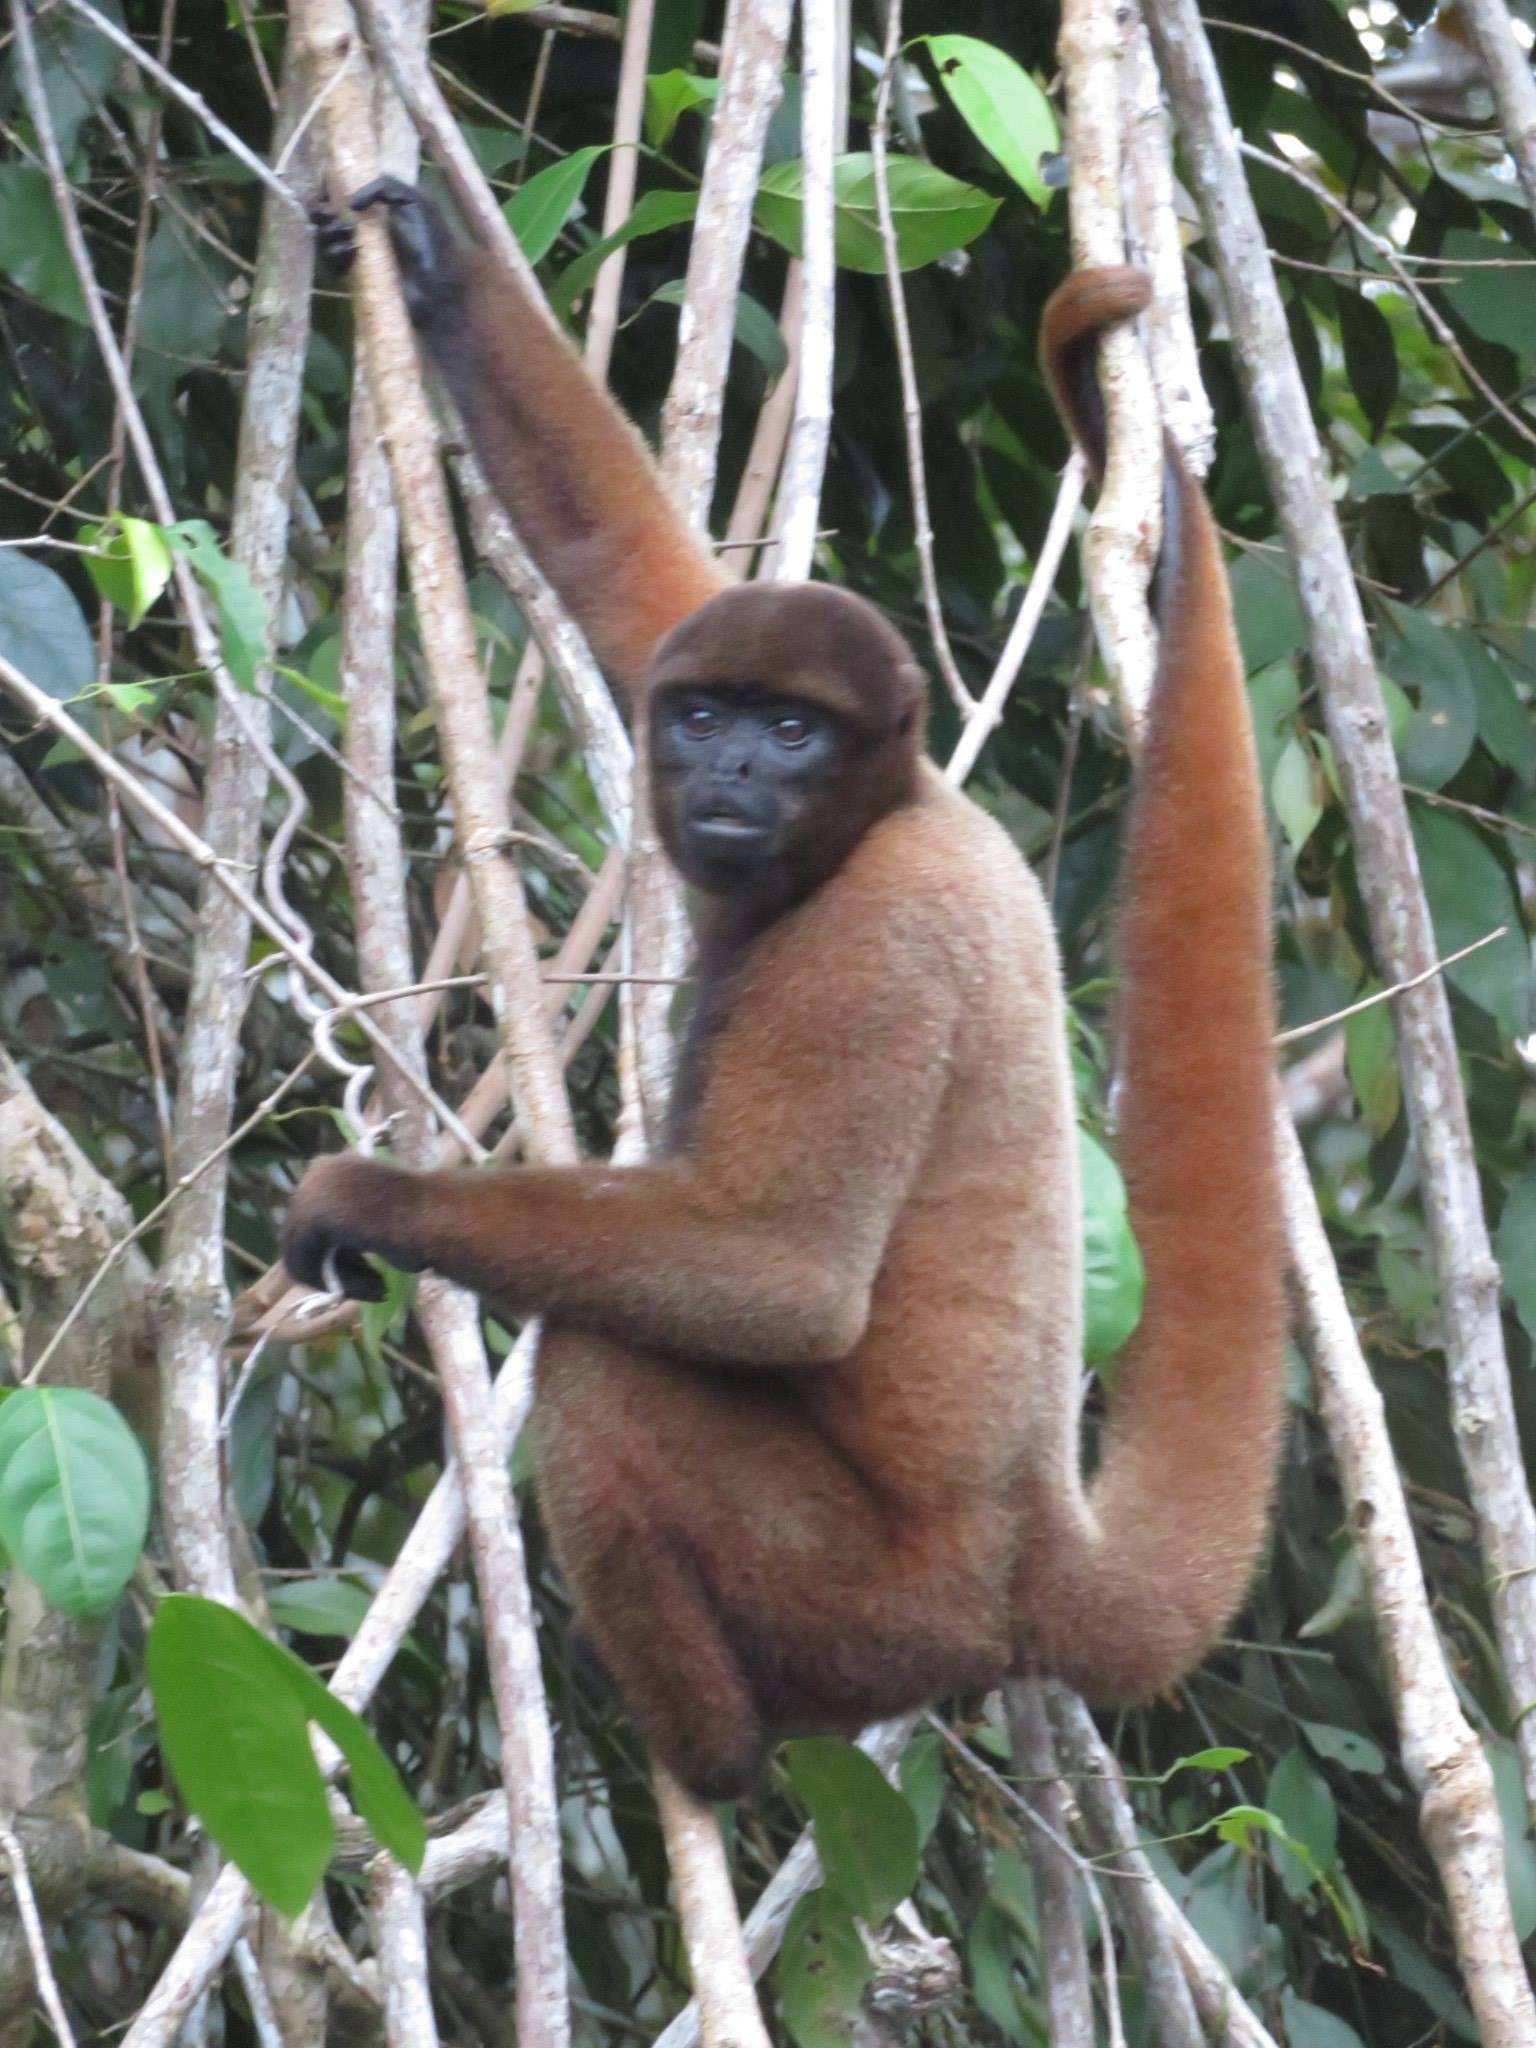 A monkey climbing a tree